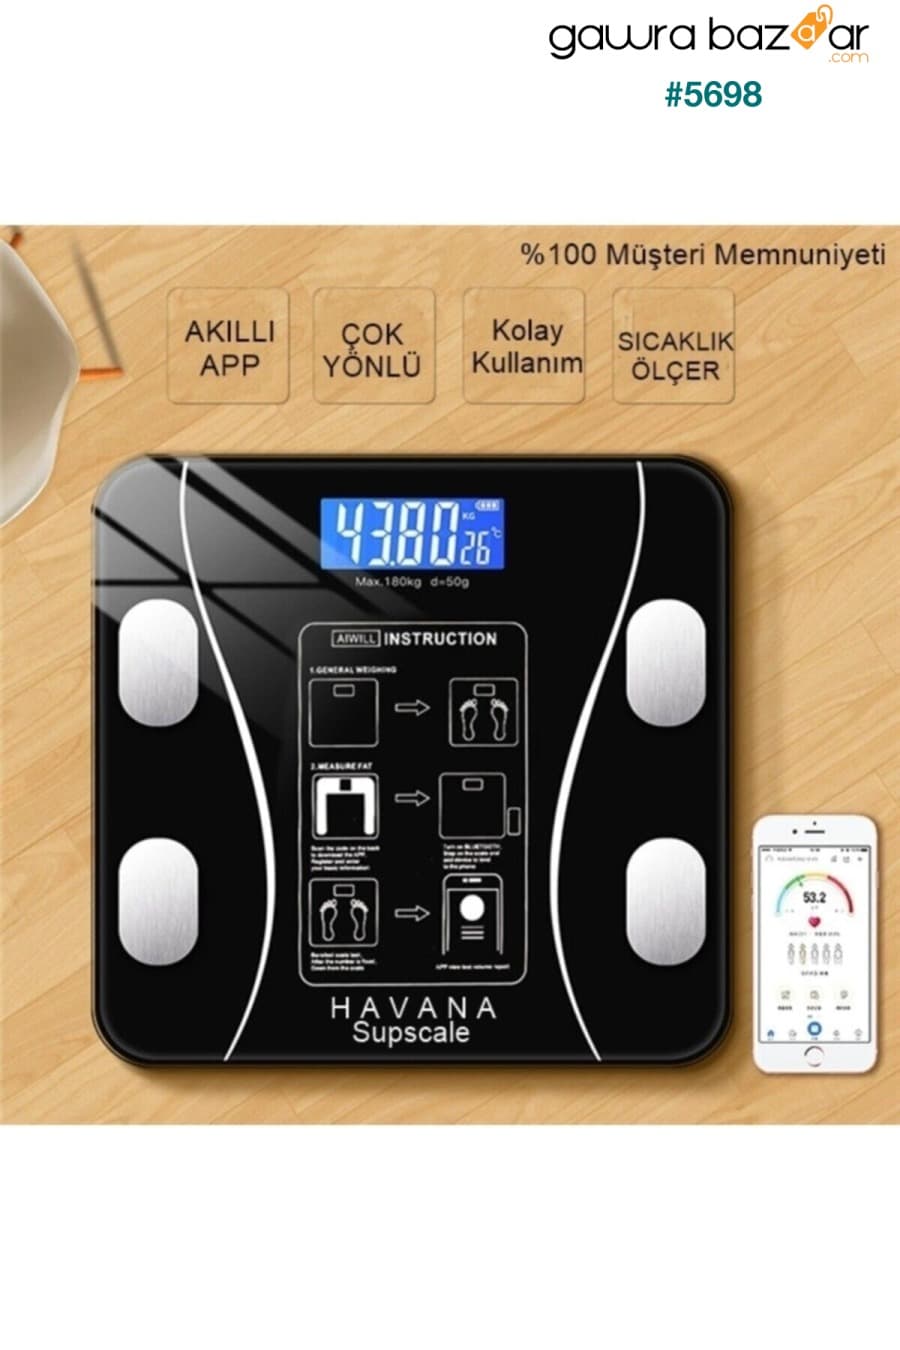 مقياس رقمي مقياس الوزن الإلكتروني الذكي للدهون والعضلات والماء ومؤشر كتلة الجسم ومقياس الوزن يعمل بالبطارية Nivagatore 3